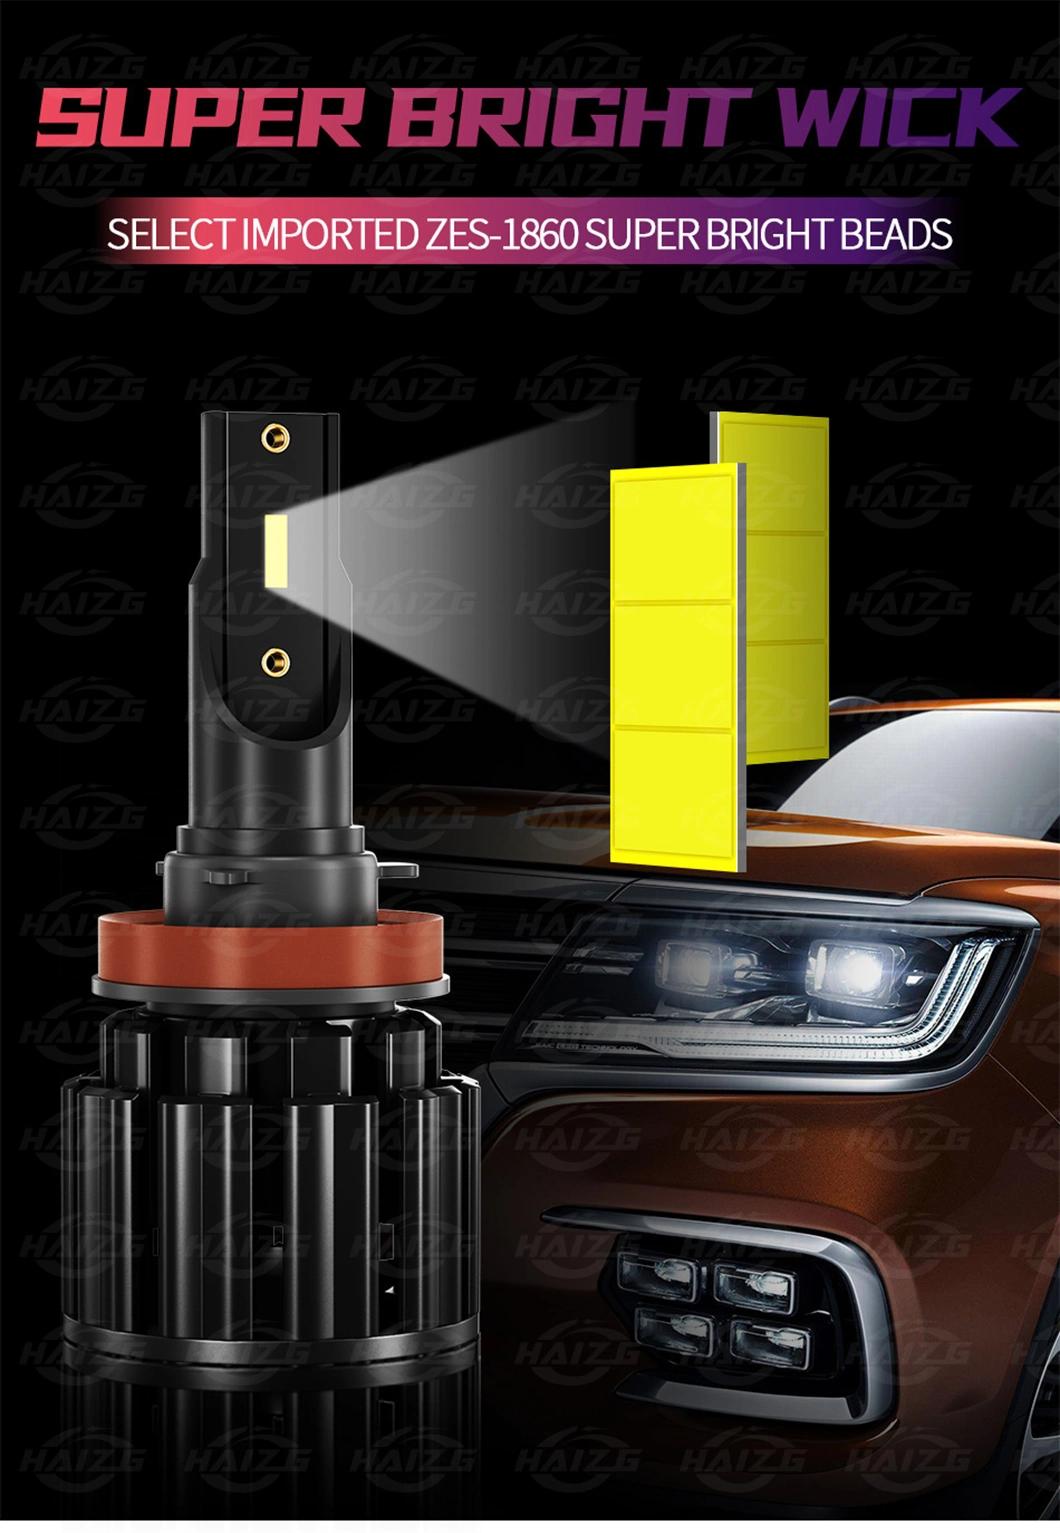 Haizg LED H7/H4 HID Auto Fog Light Truck Work Light H3/H11 for Car LED Headlight 9005 9006 LED Light